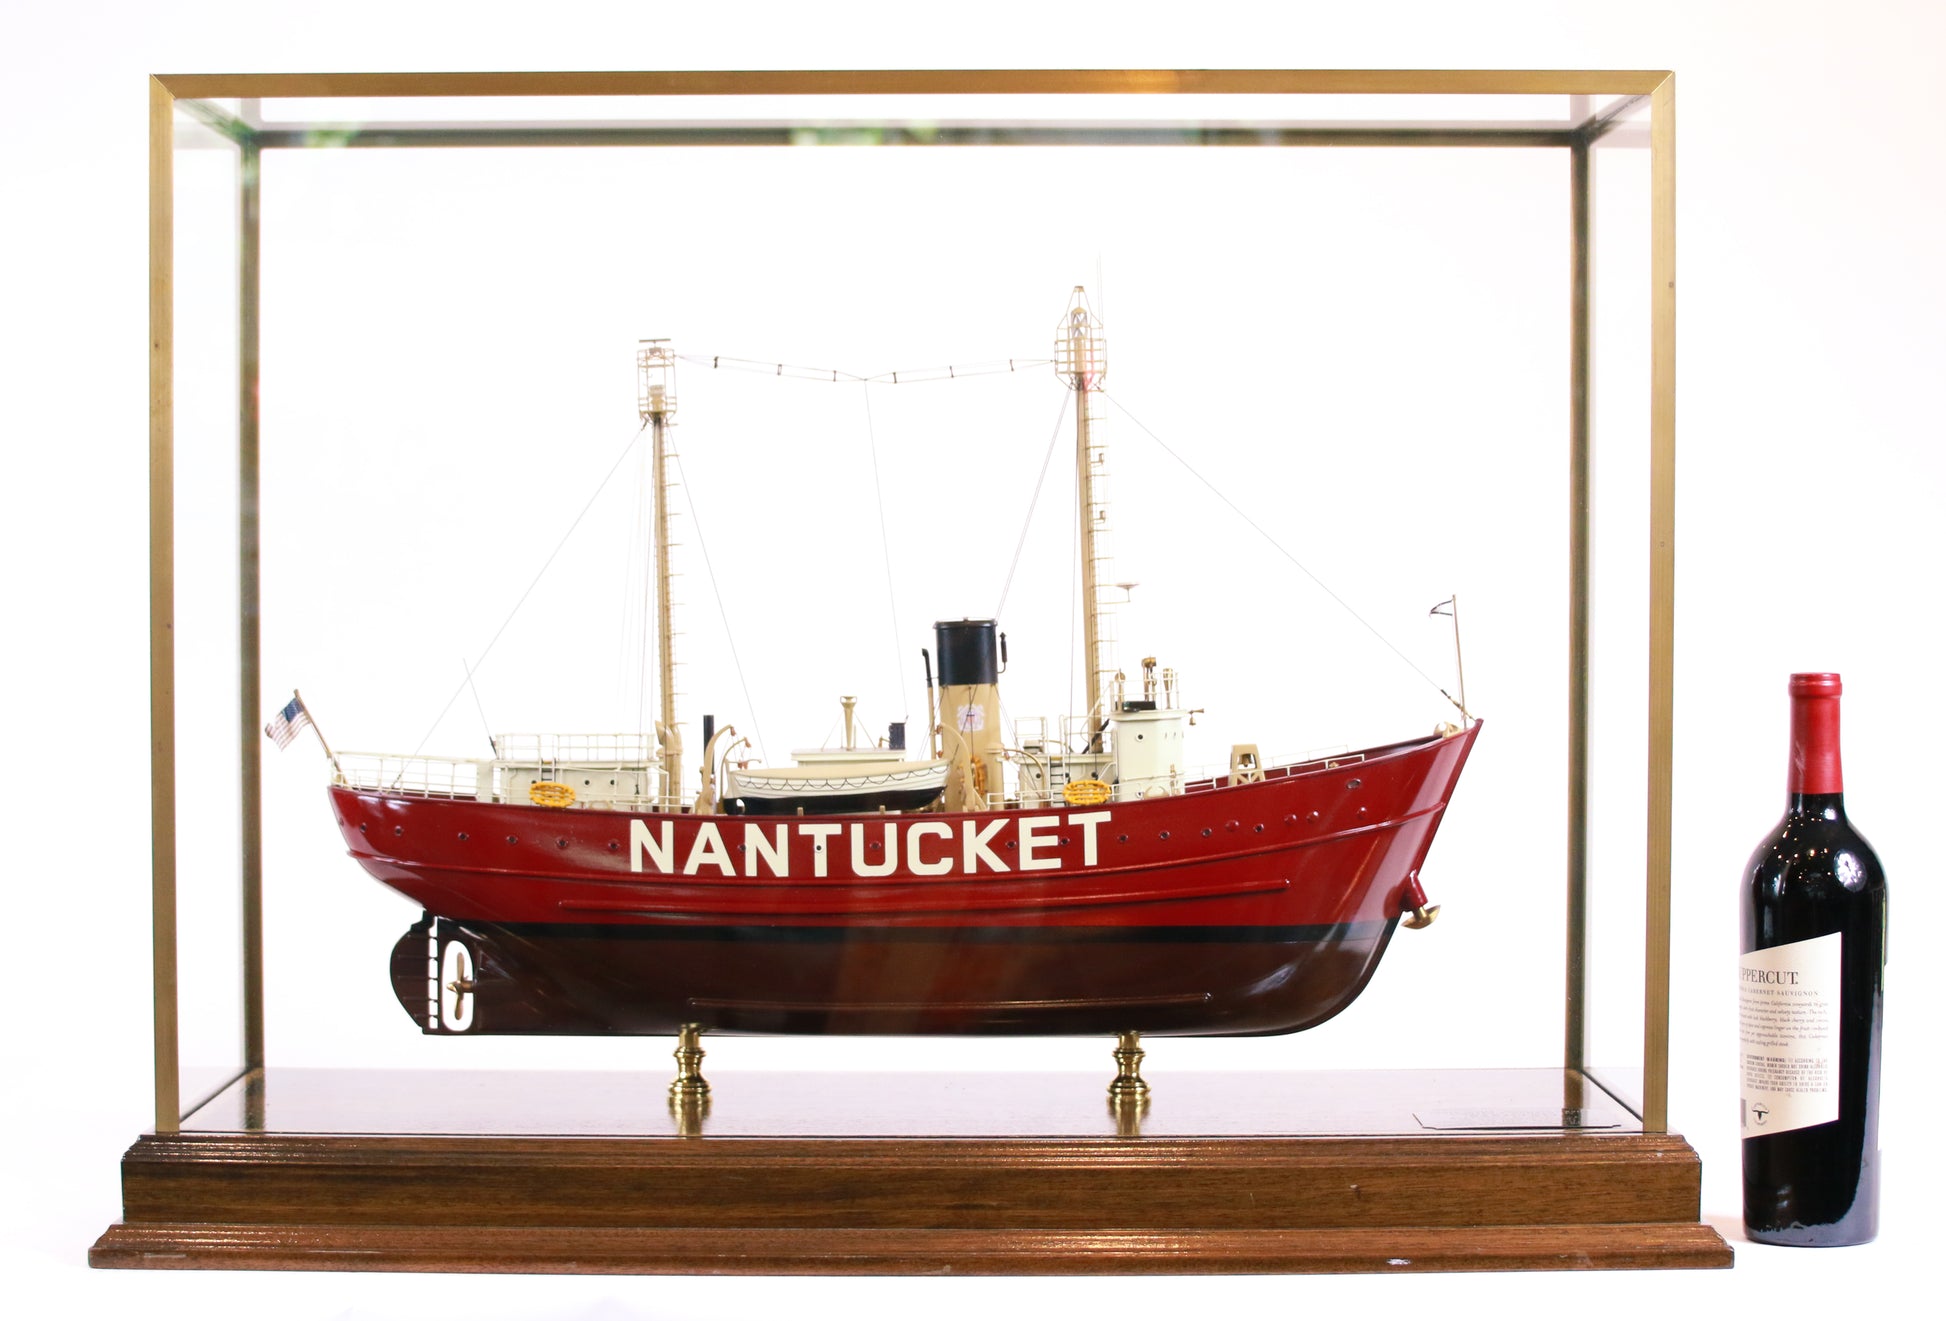 Nantucket Lightvessel LV-117.jpg